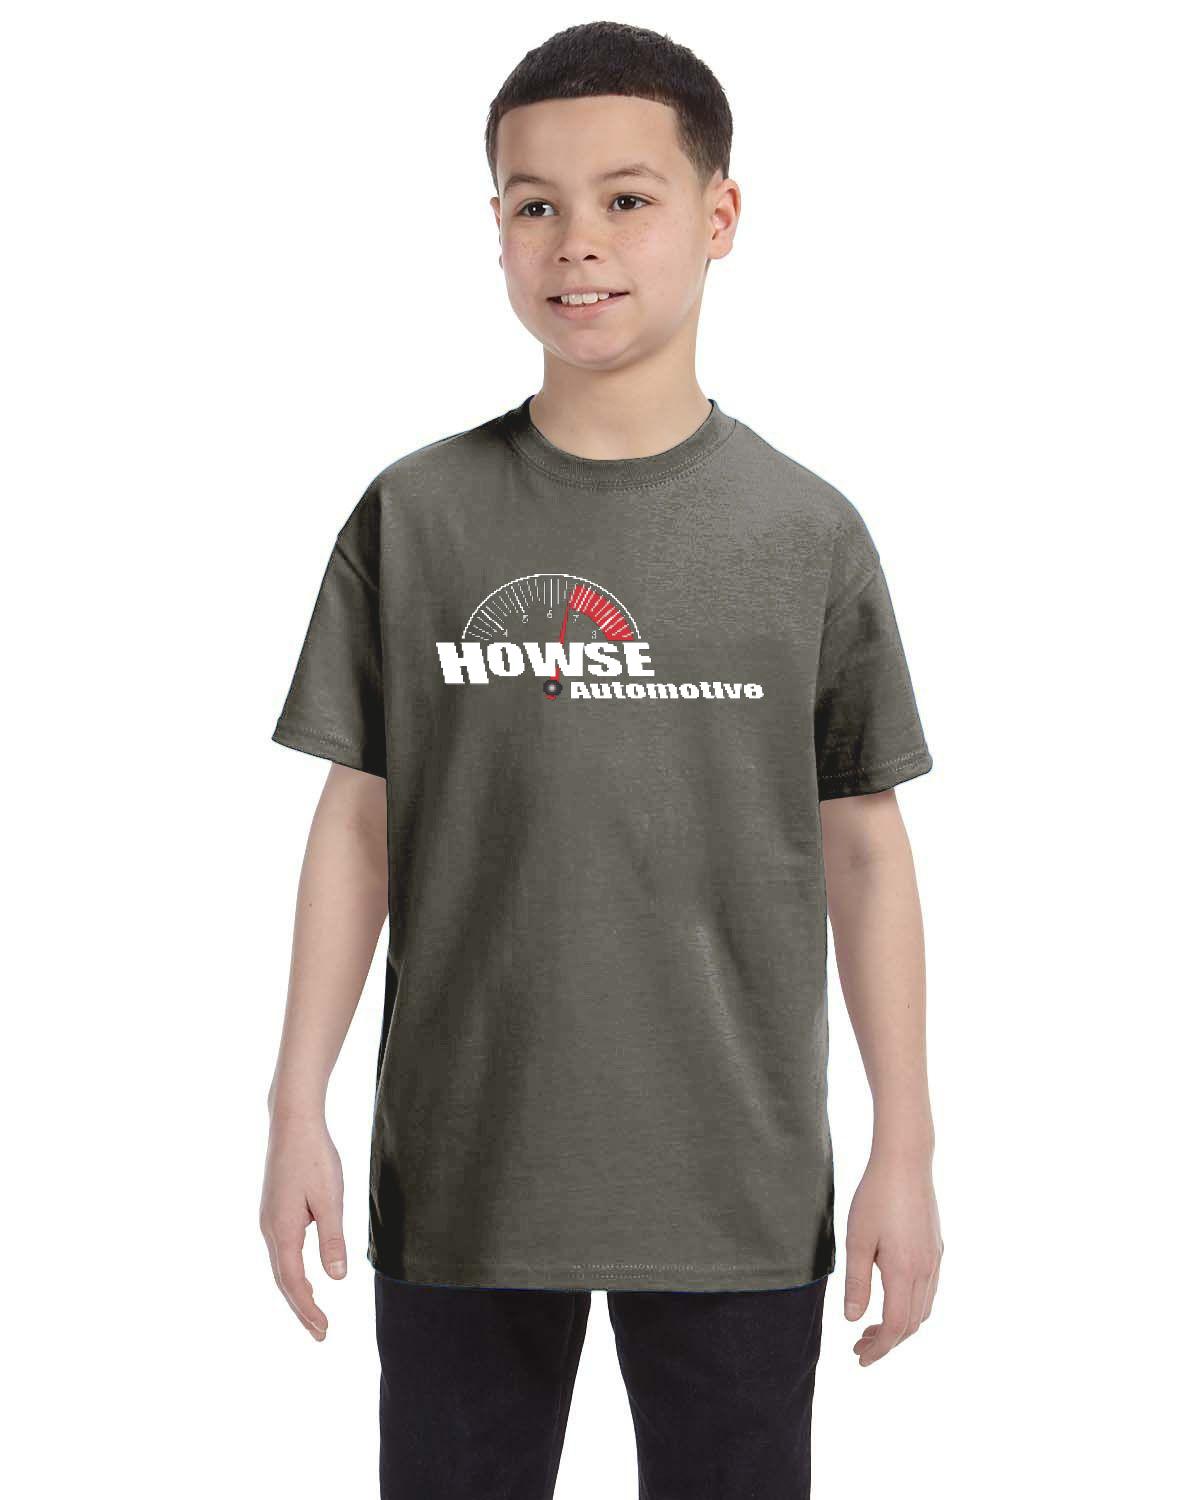 Howse Automotive Kid's T-Shirt